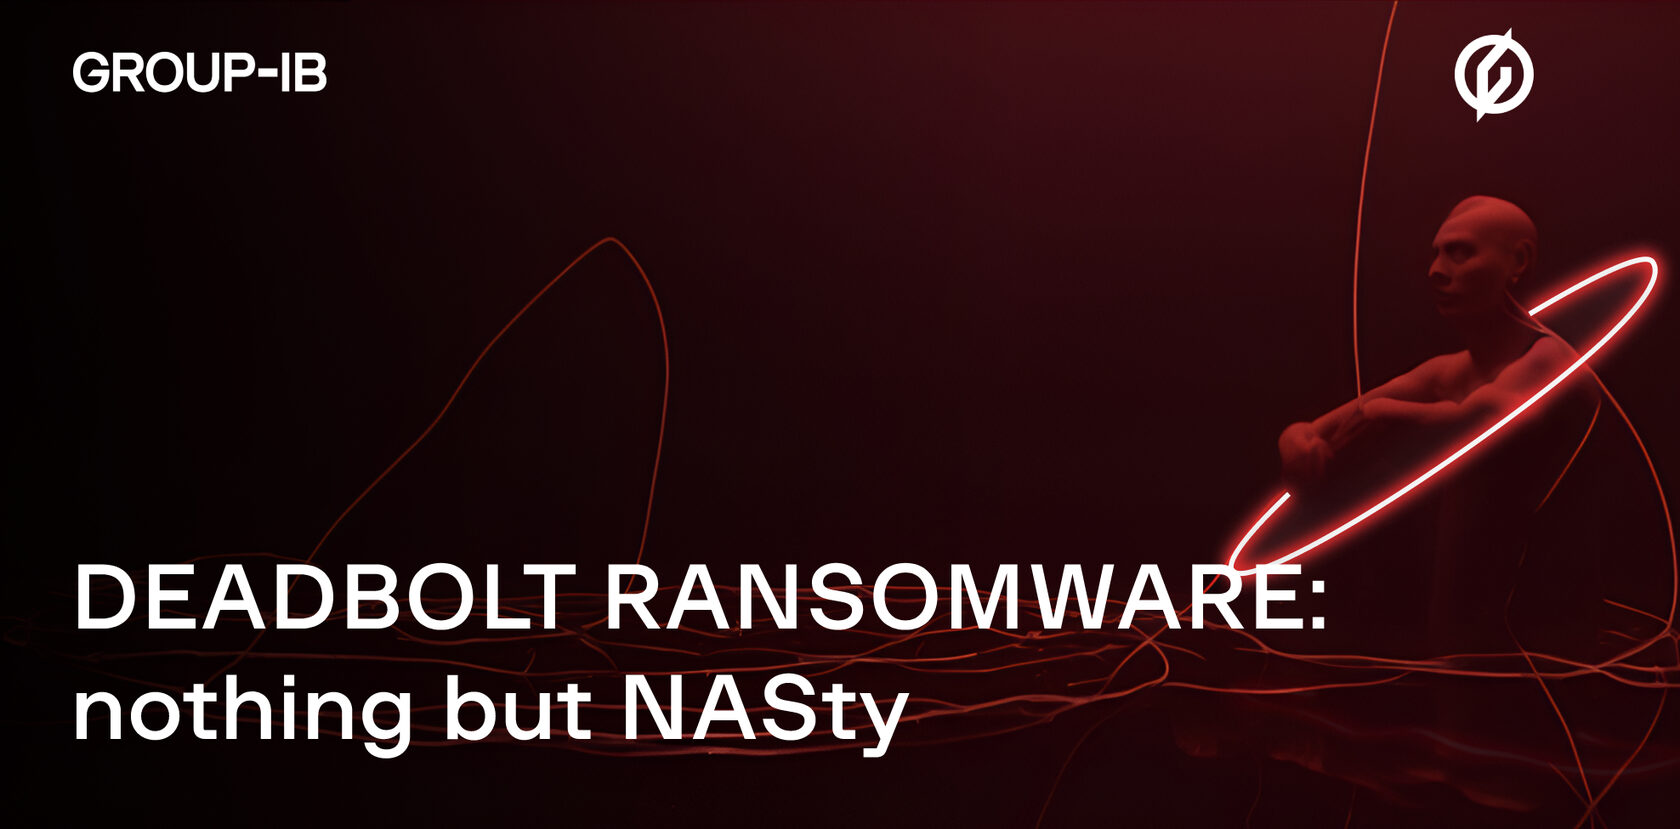 takian.ir nas under threat by deadbolt ransomware 1